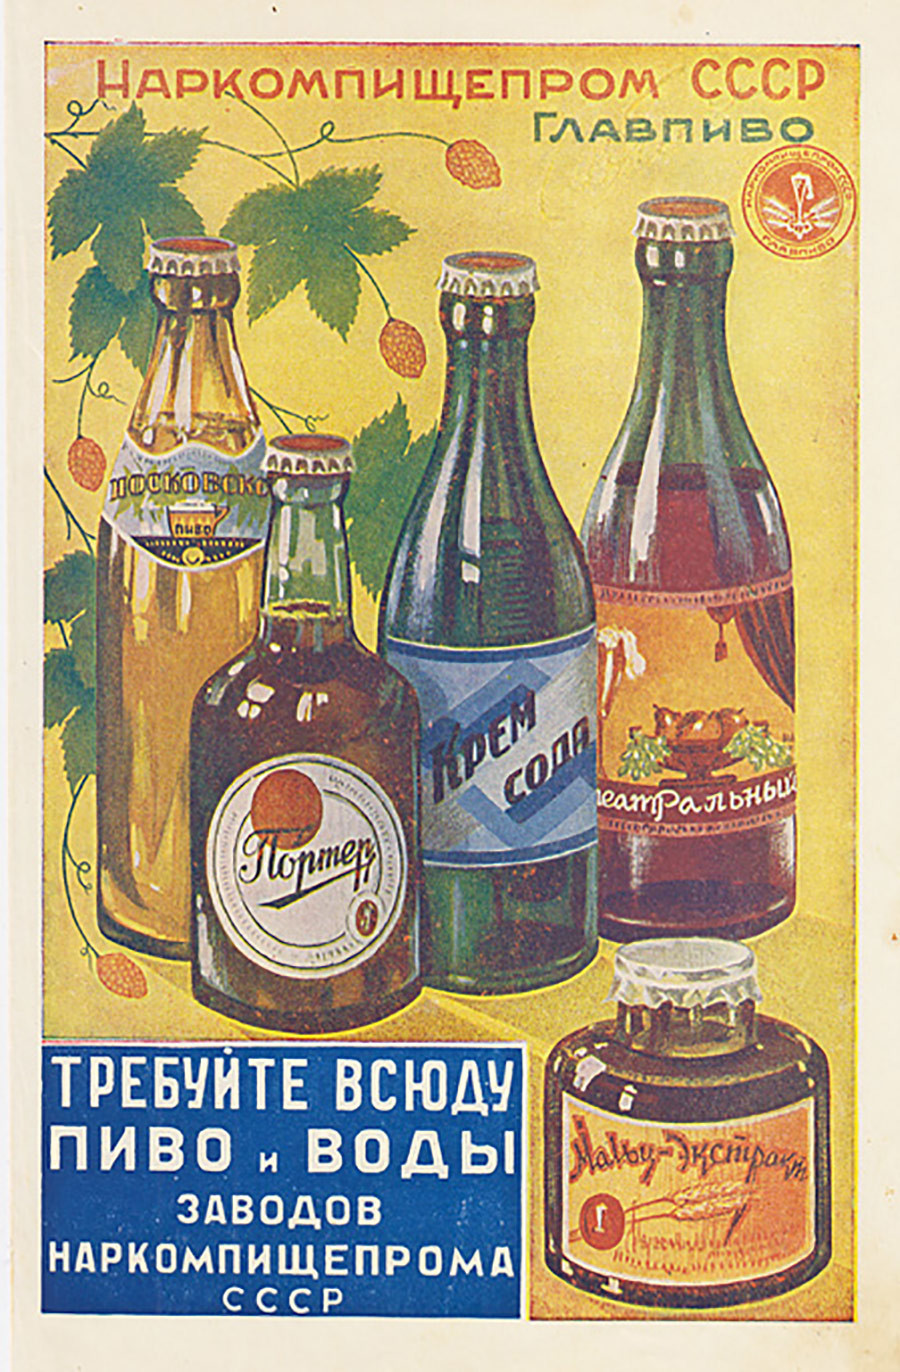 Exigez de la bière et de l'eau produits par les usines du commissaire du peuple à l'Industrie agroalimentaire d'URSS